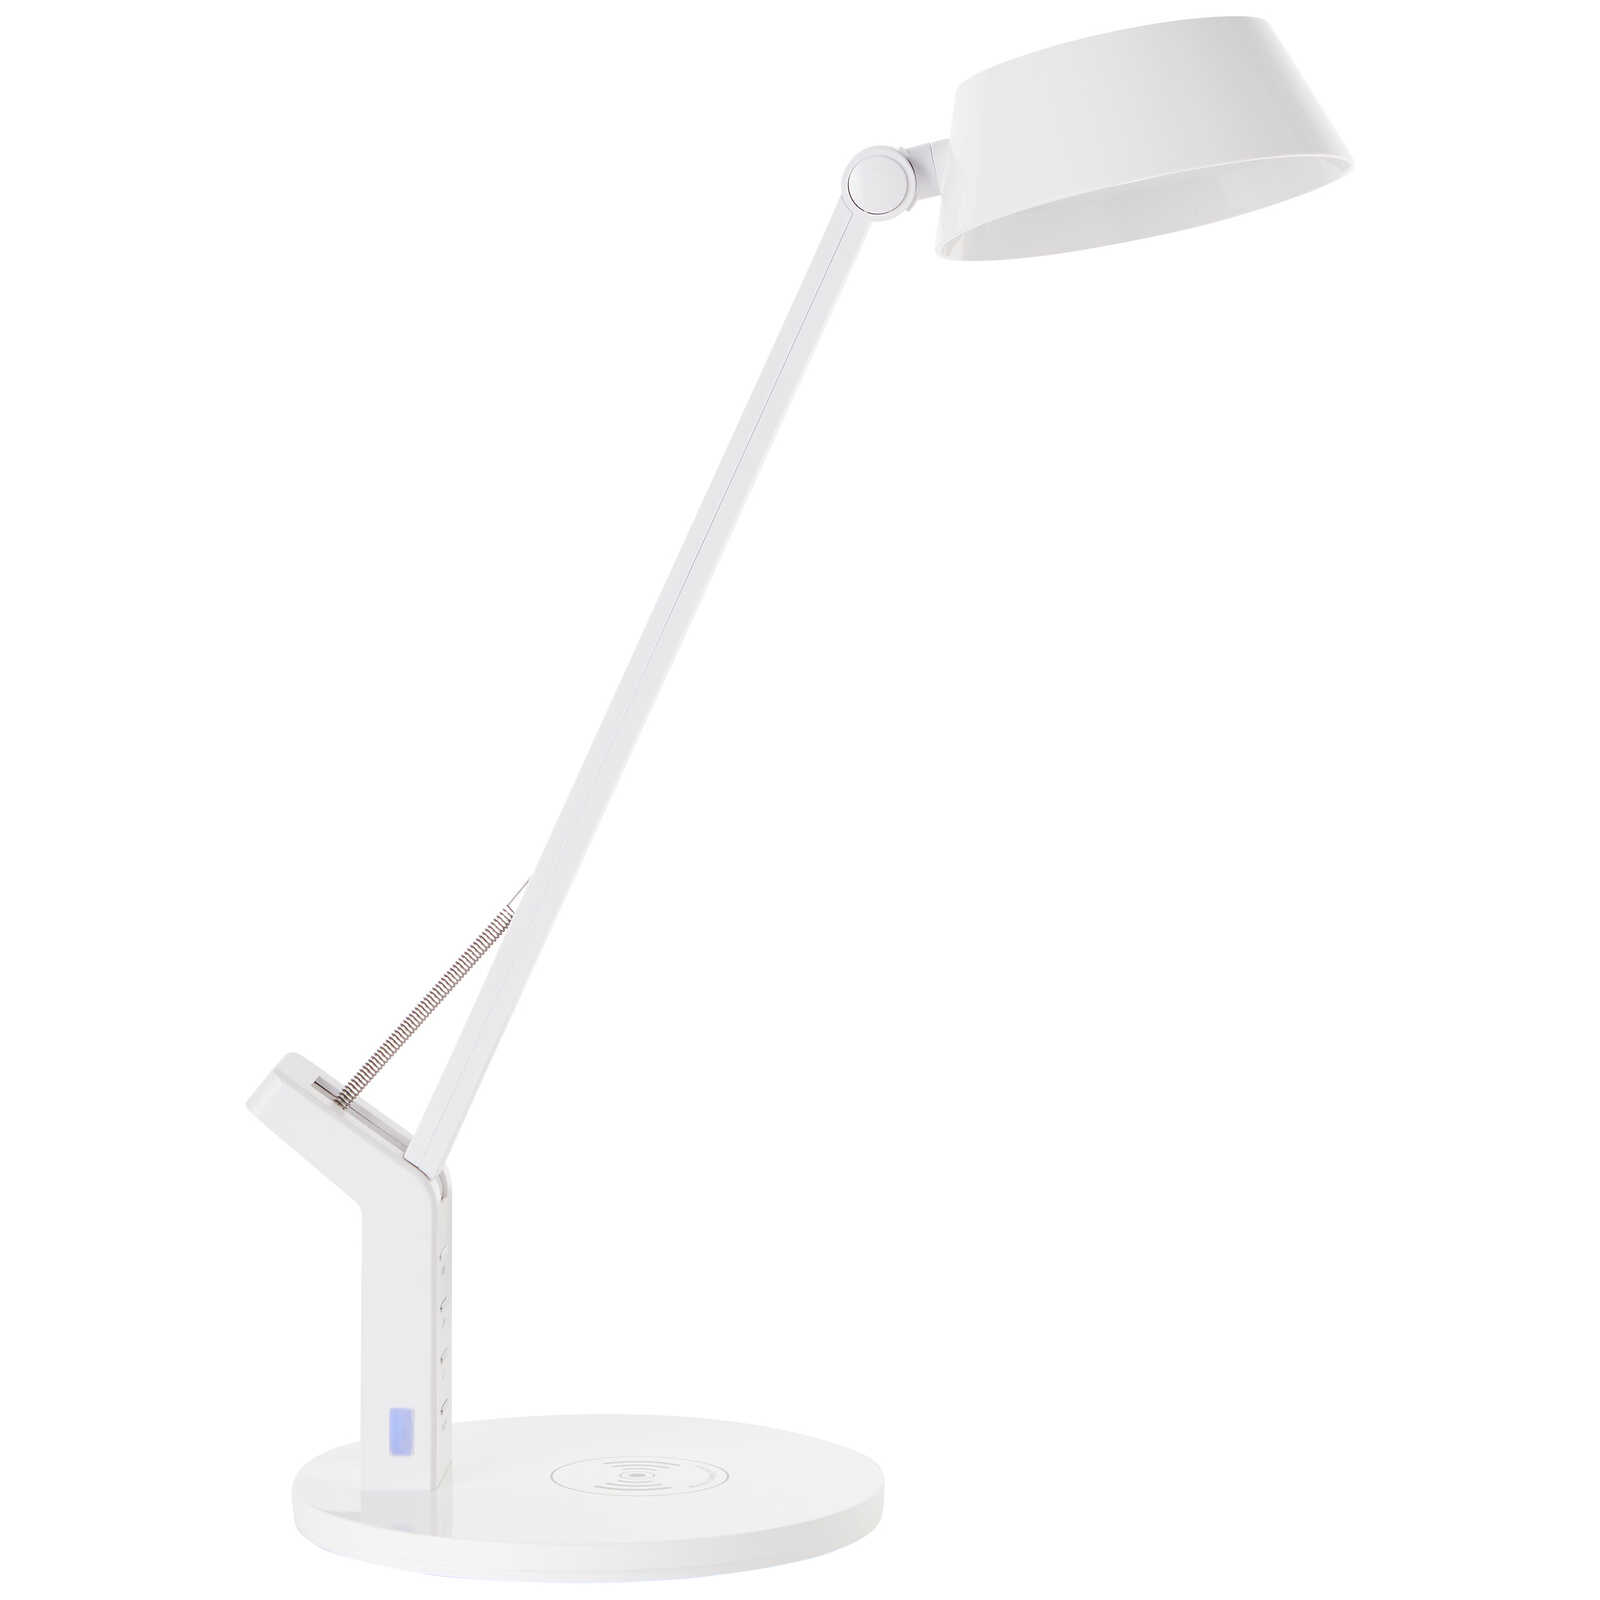             Lampe de table en plastique - Julius 1 - Blanc
        